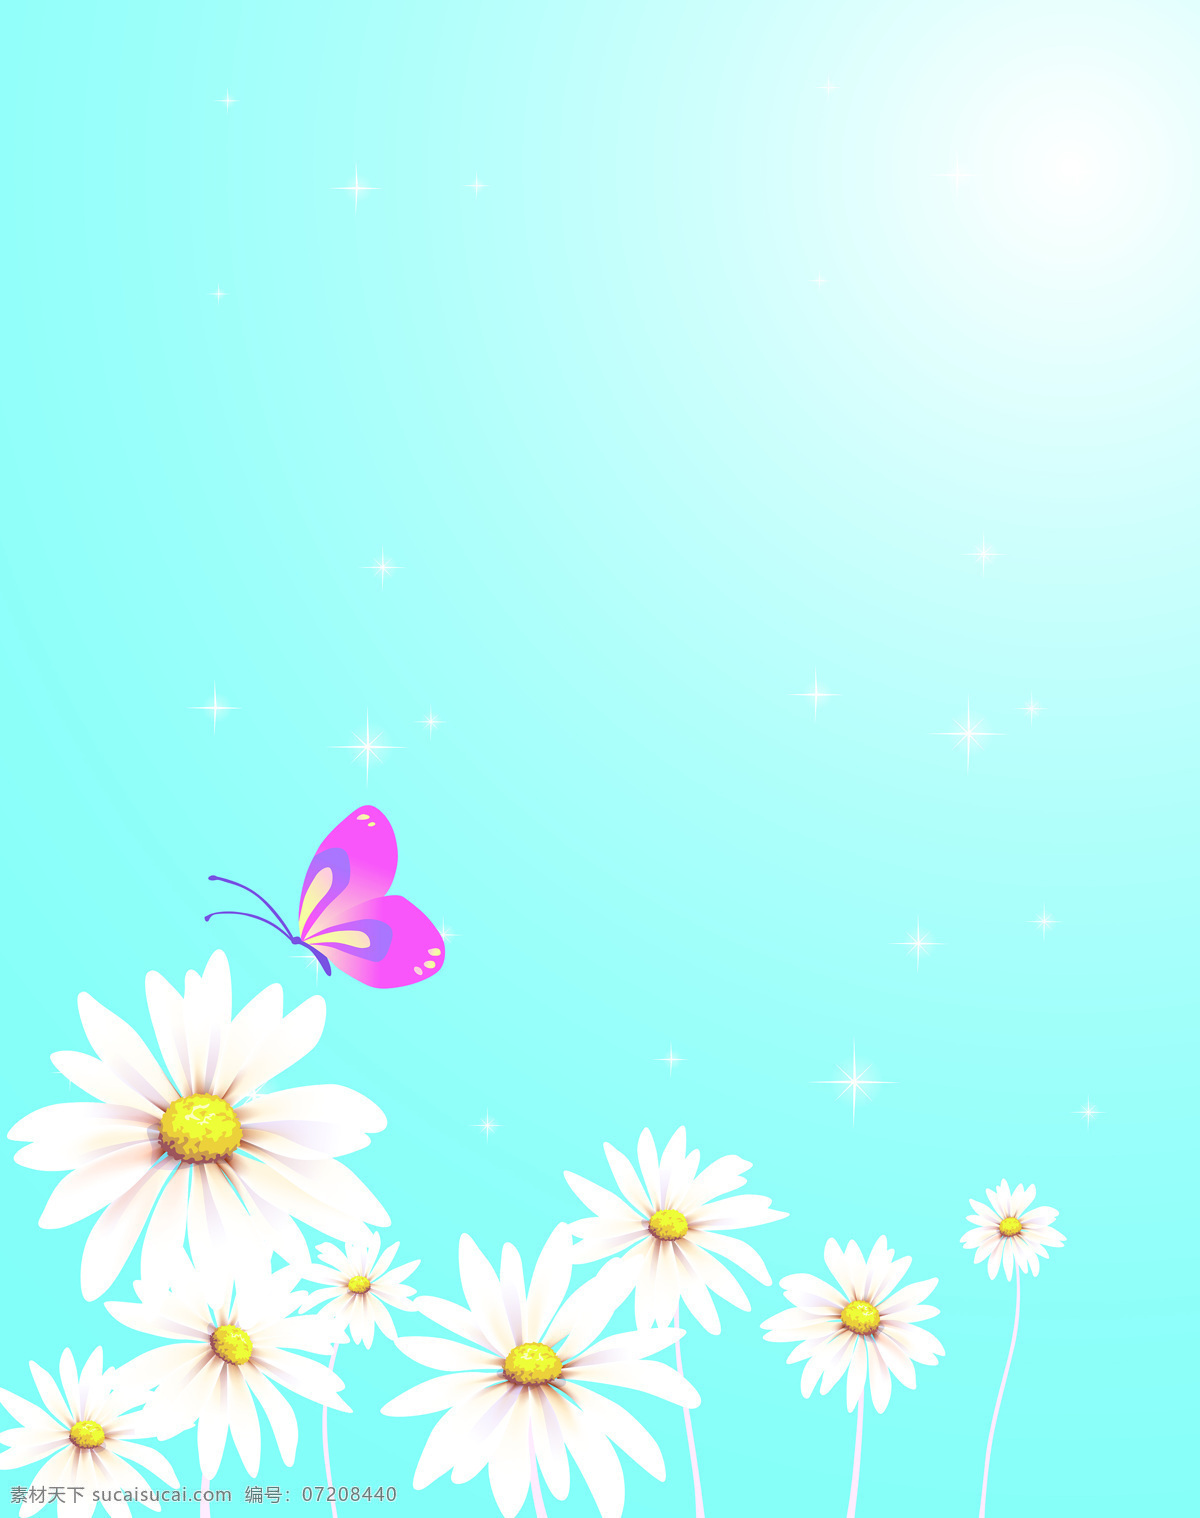 清新 小雏 菊花 朵 背景 手绘 阳光 蓝天 白色 小雏菊 紫色 蝴蝶 唯美